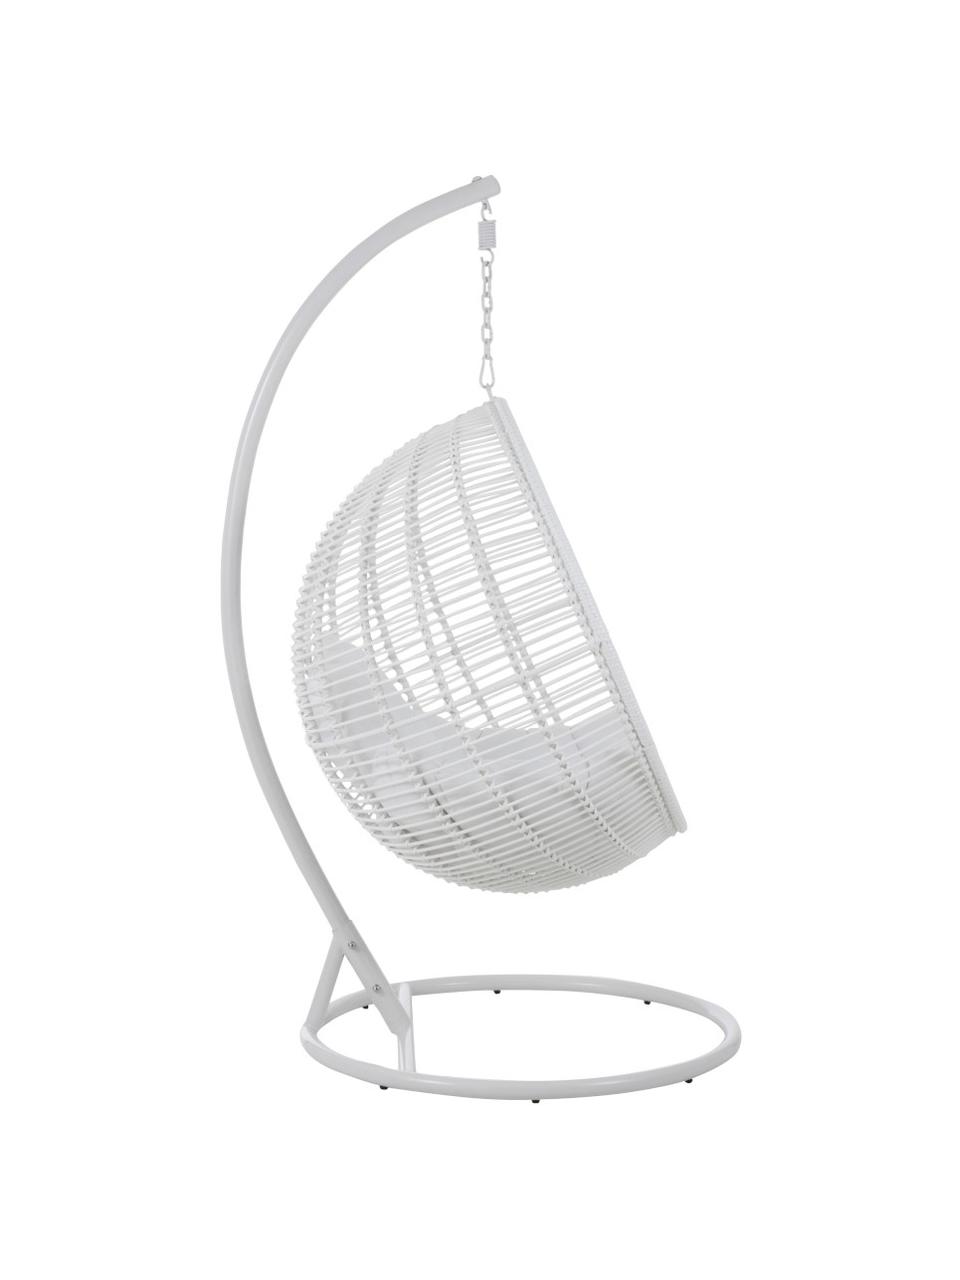 Ronde hangstoel Round met metalen frame, Wit, 119 x 193 cm